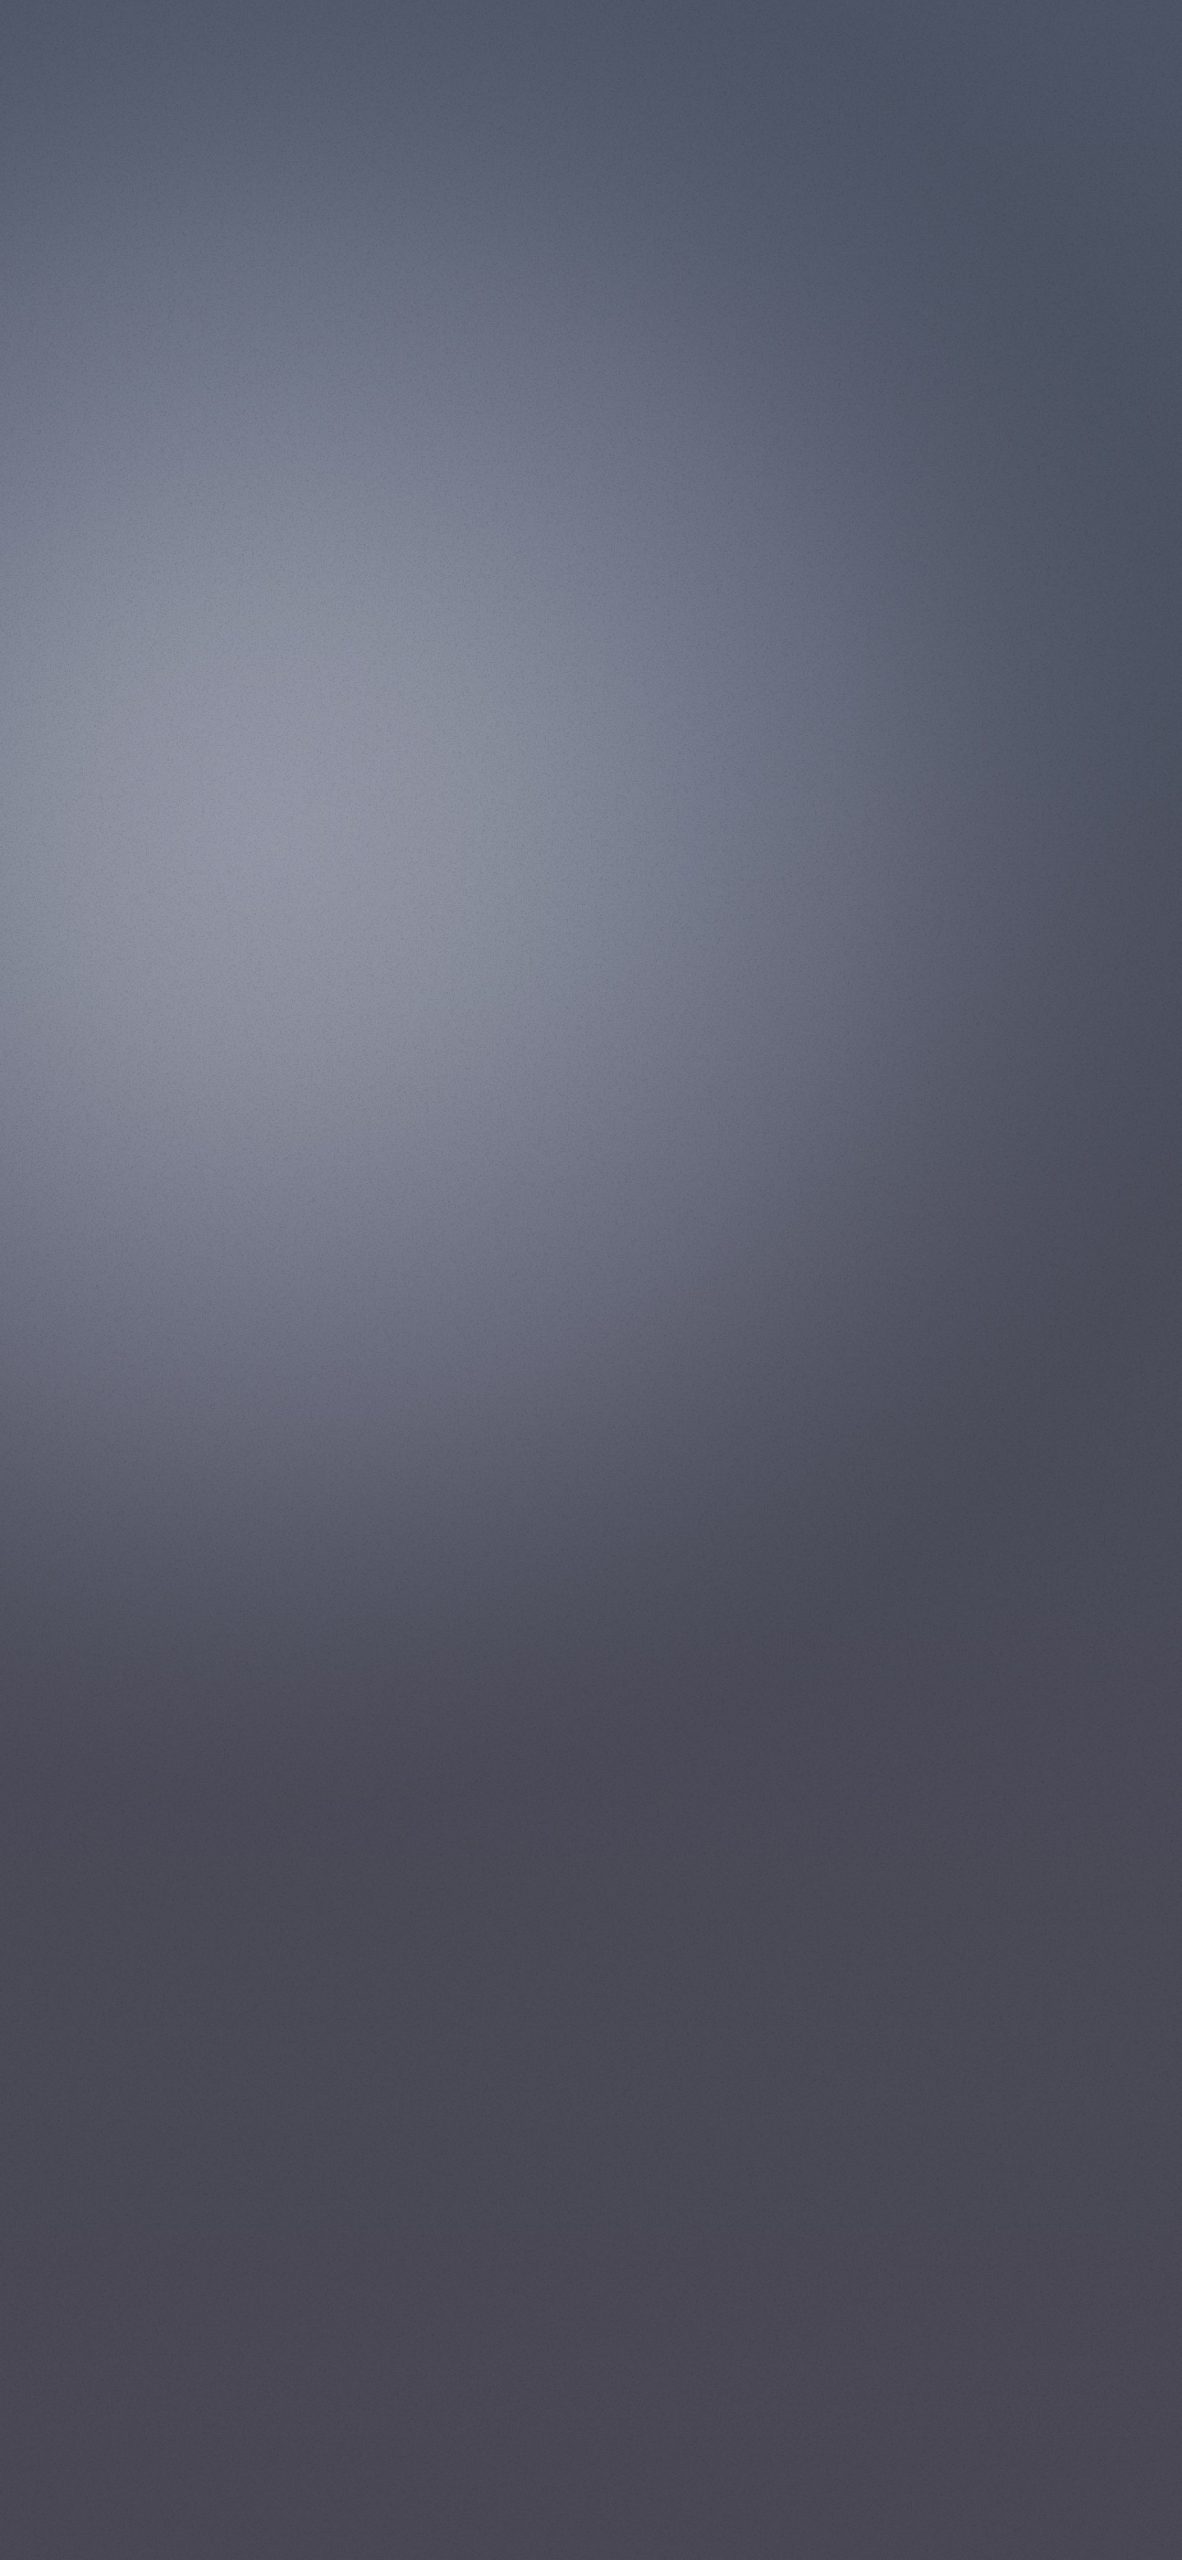 LG G7 Fit Stock Wallpaper 08 - [1440x3120]